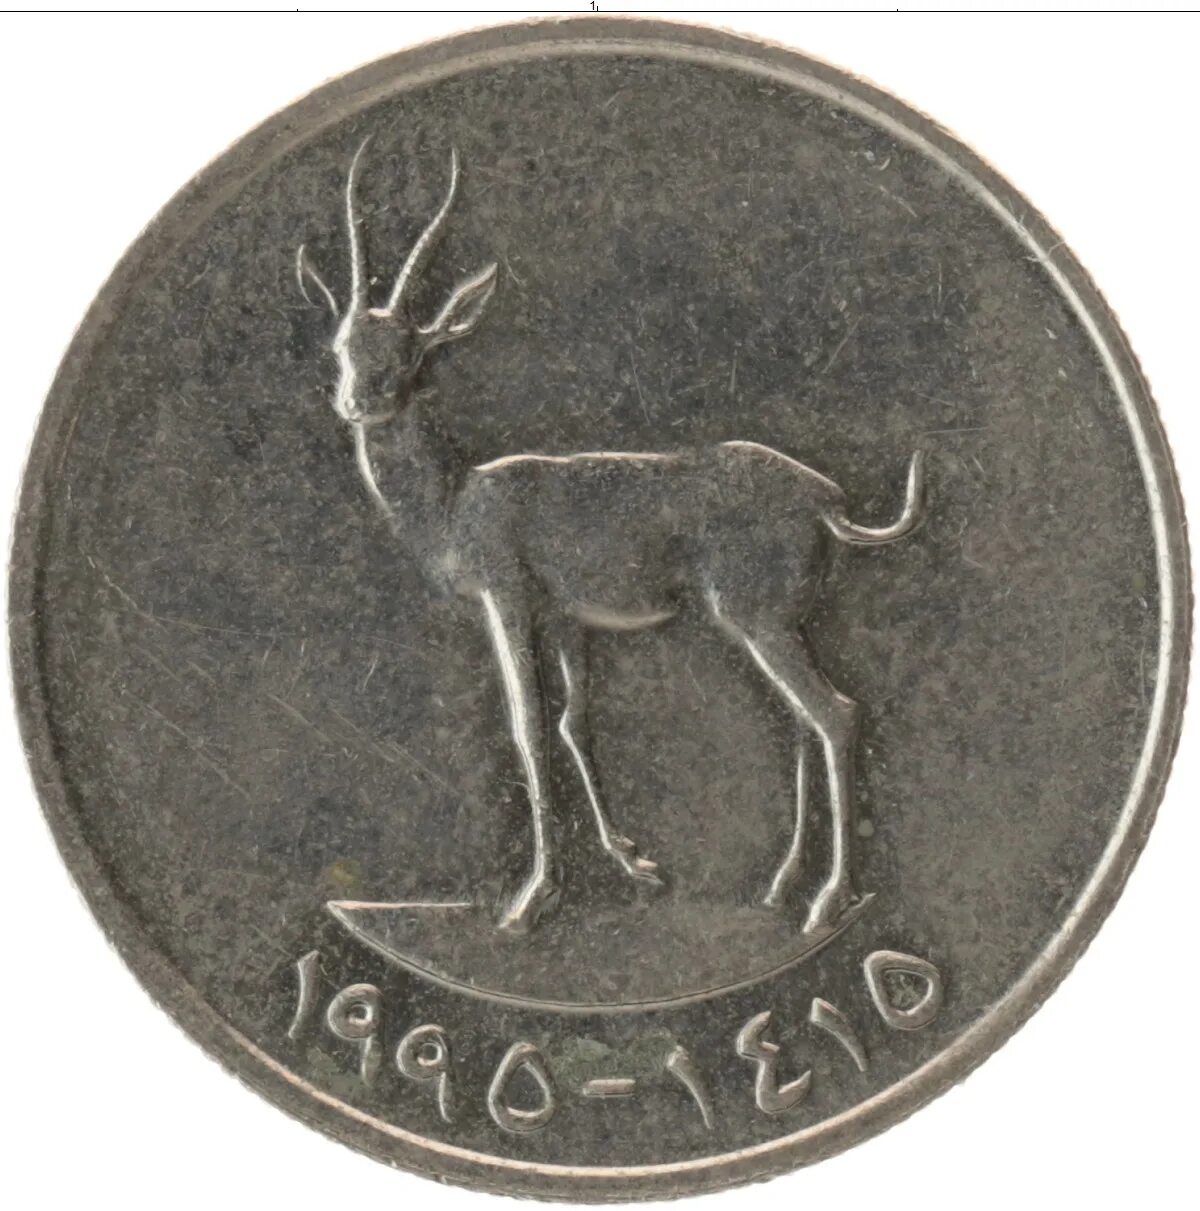 25 Филсов. 25 Филсов 1973-2011 ОАЭ. 25 Филсов ОАЭ. Арабские дирхамы монеты 25 филсов. 180 000 000 дирхам в рубли